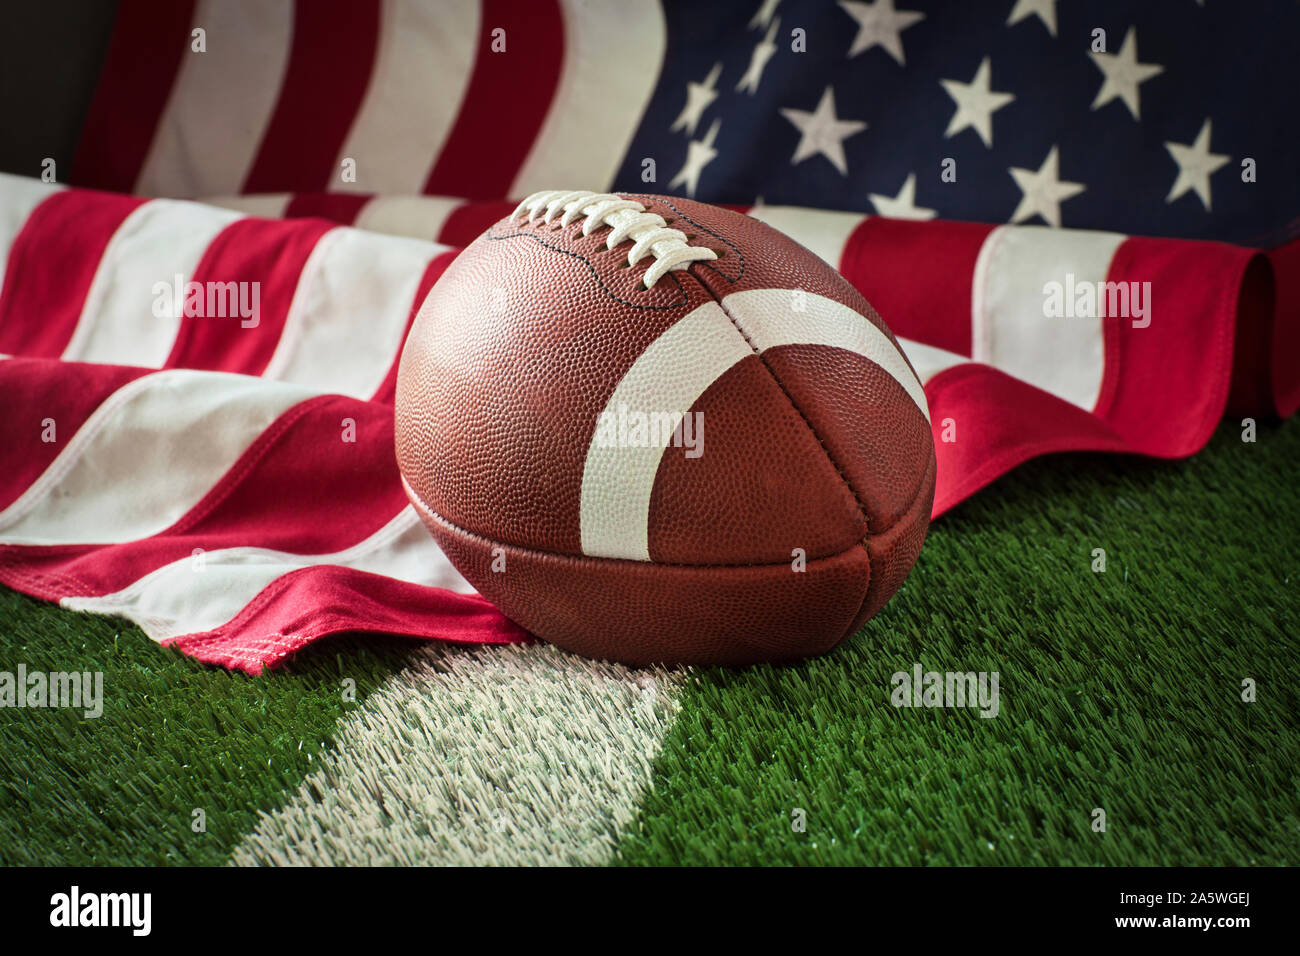 Le football sur un terrain vert avec une bande blanche et drapeau Américain derrière Banque D'Images